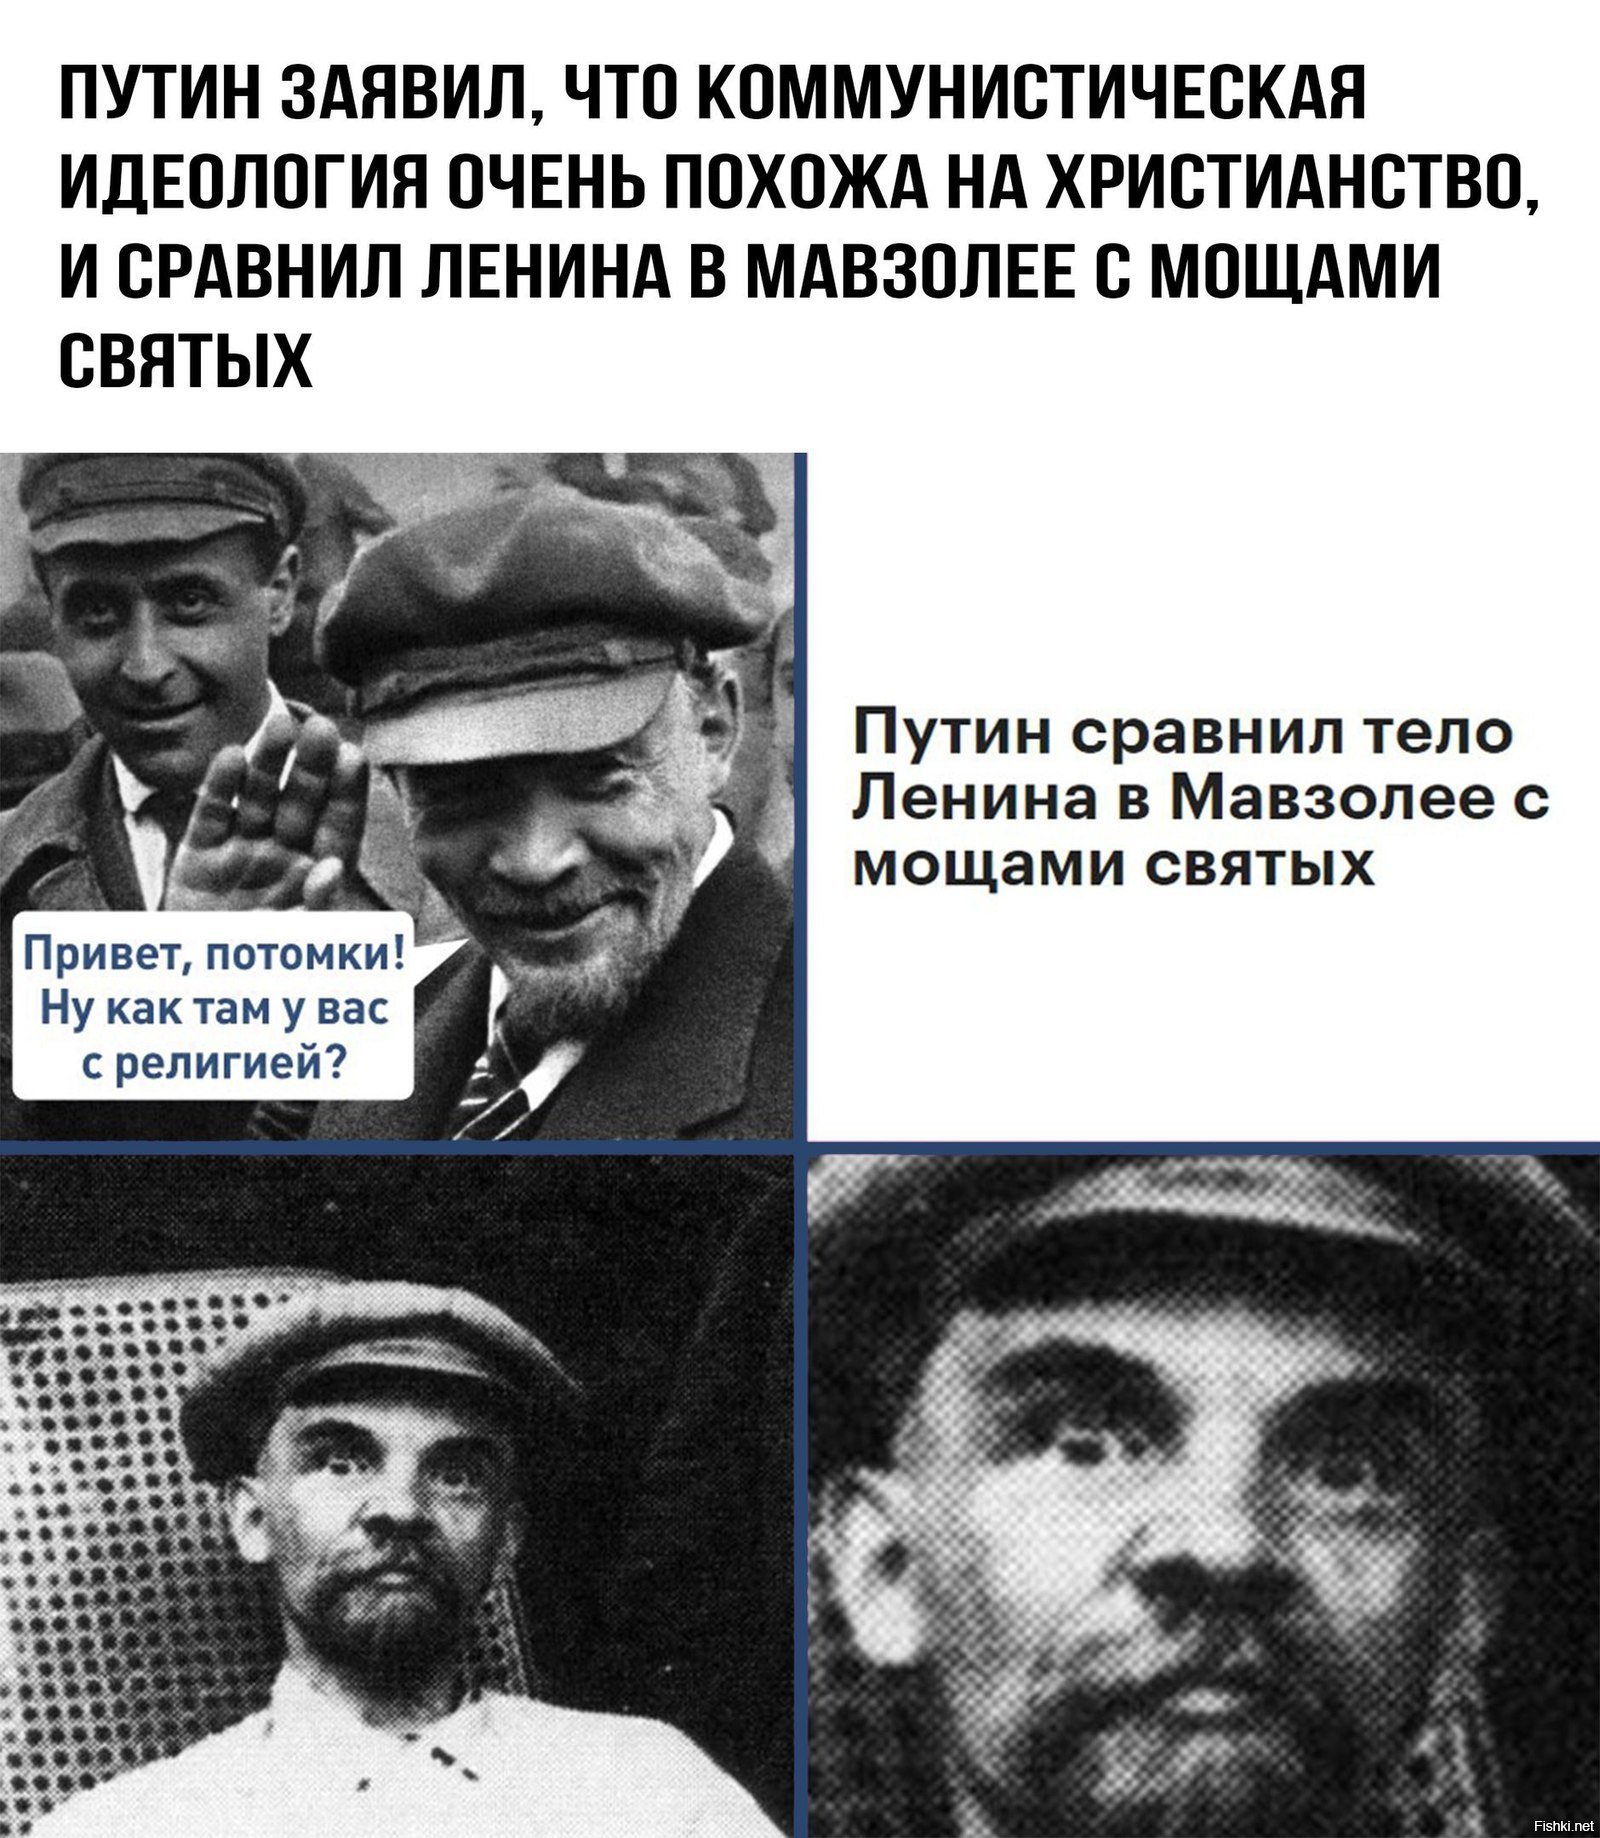 Ленин как вы там потомки